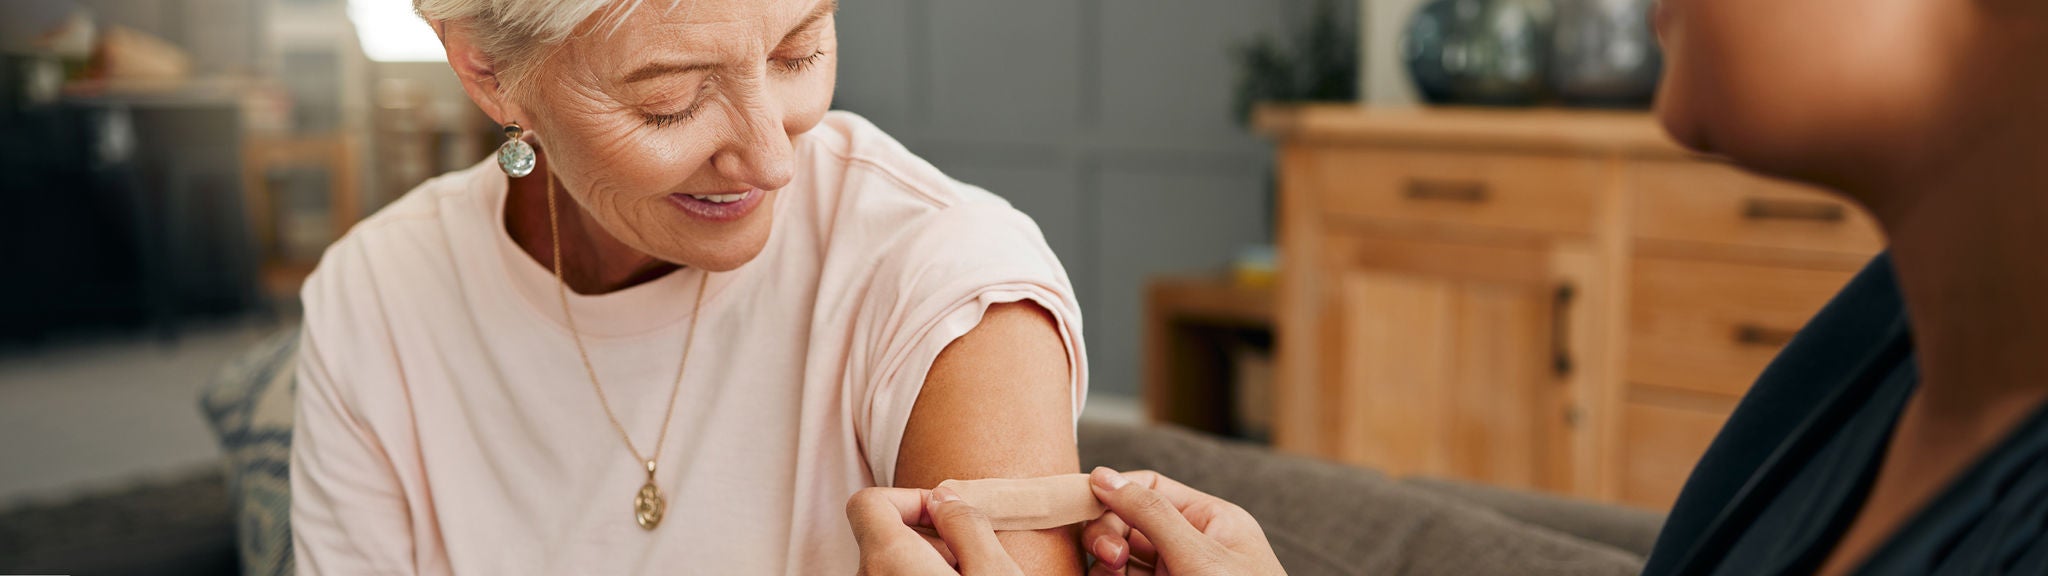 Eine Frau bekommt nach der Grippe-Impfung ein Pflaster auf den Oberarm geklebt.